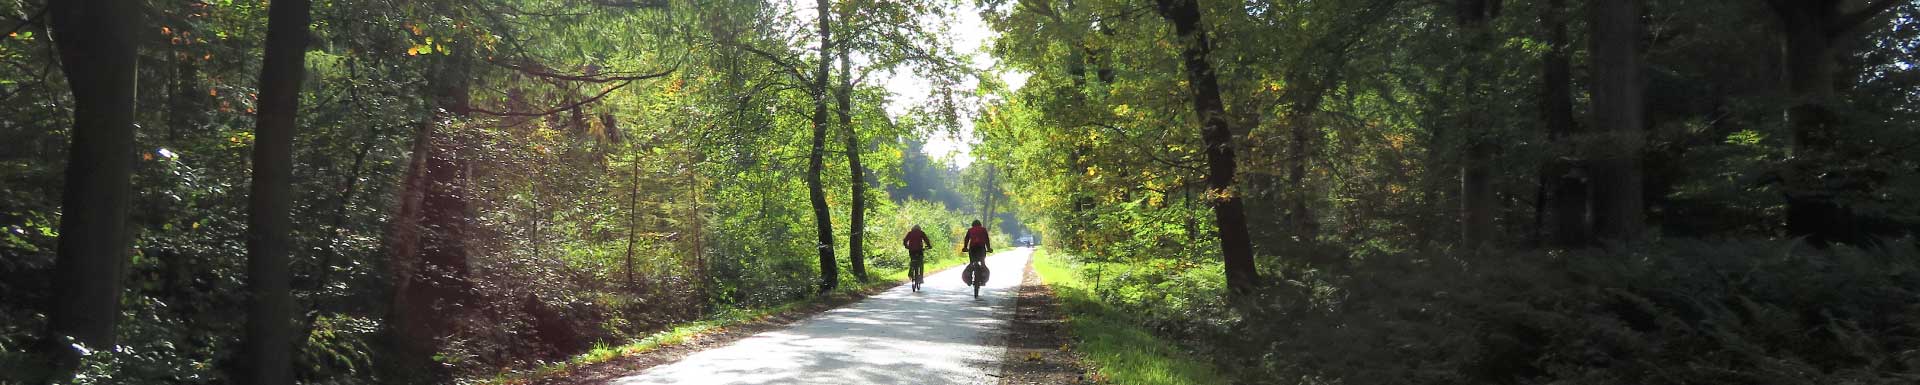 Friesland Beweegt je met fietsroutes door bos en heide